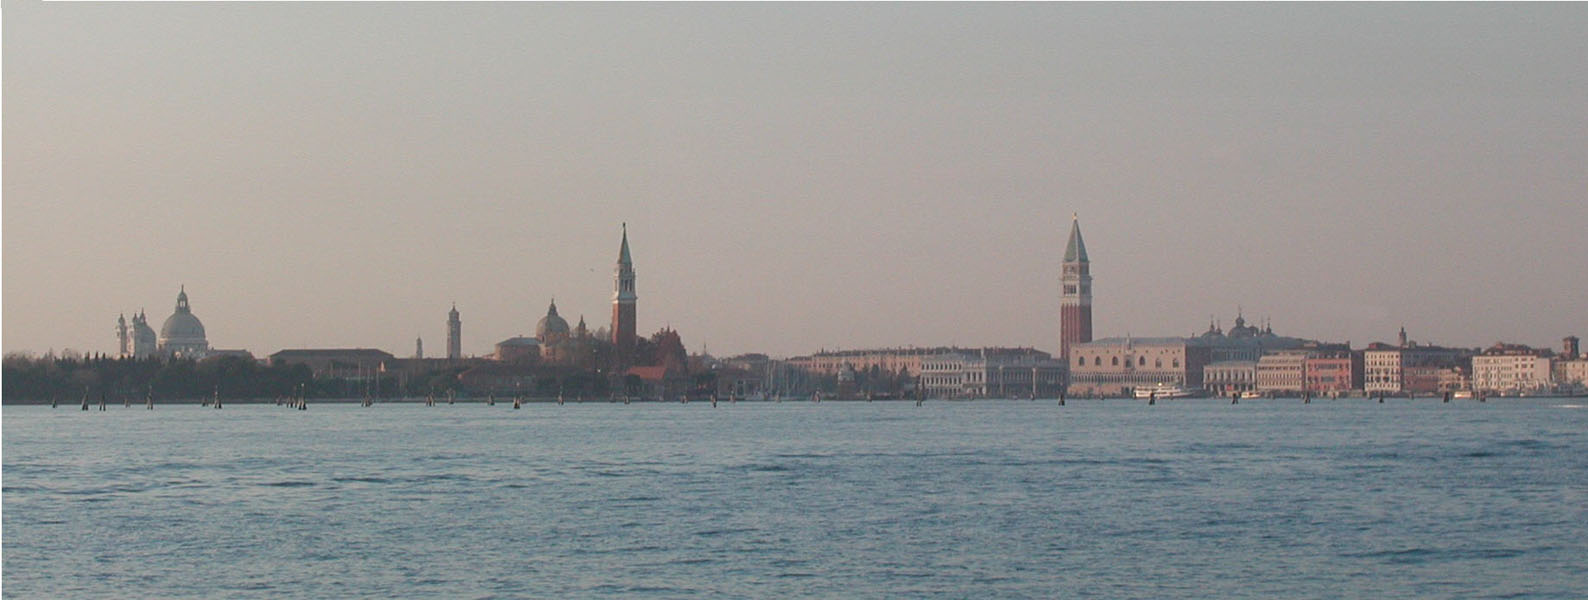 Venise Canale di San Marco